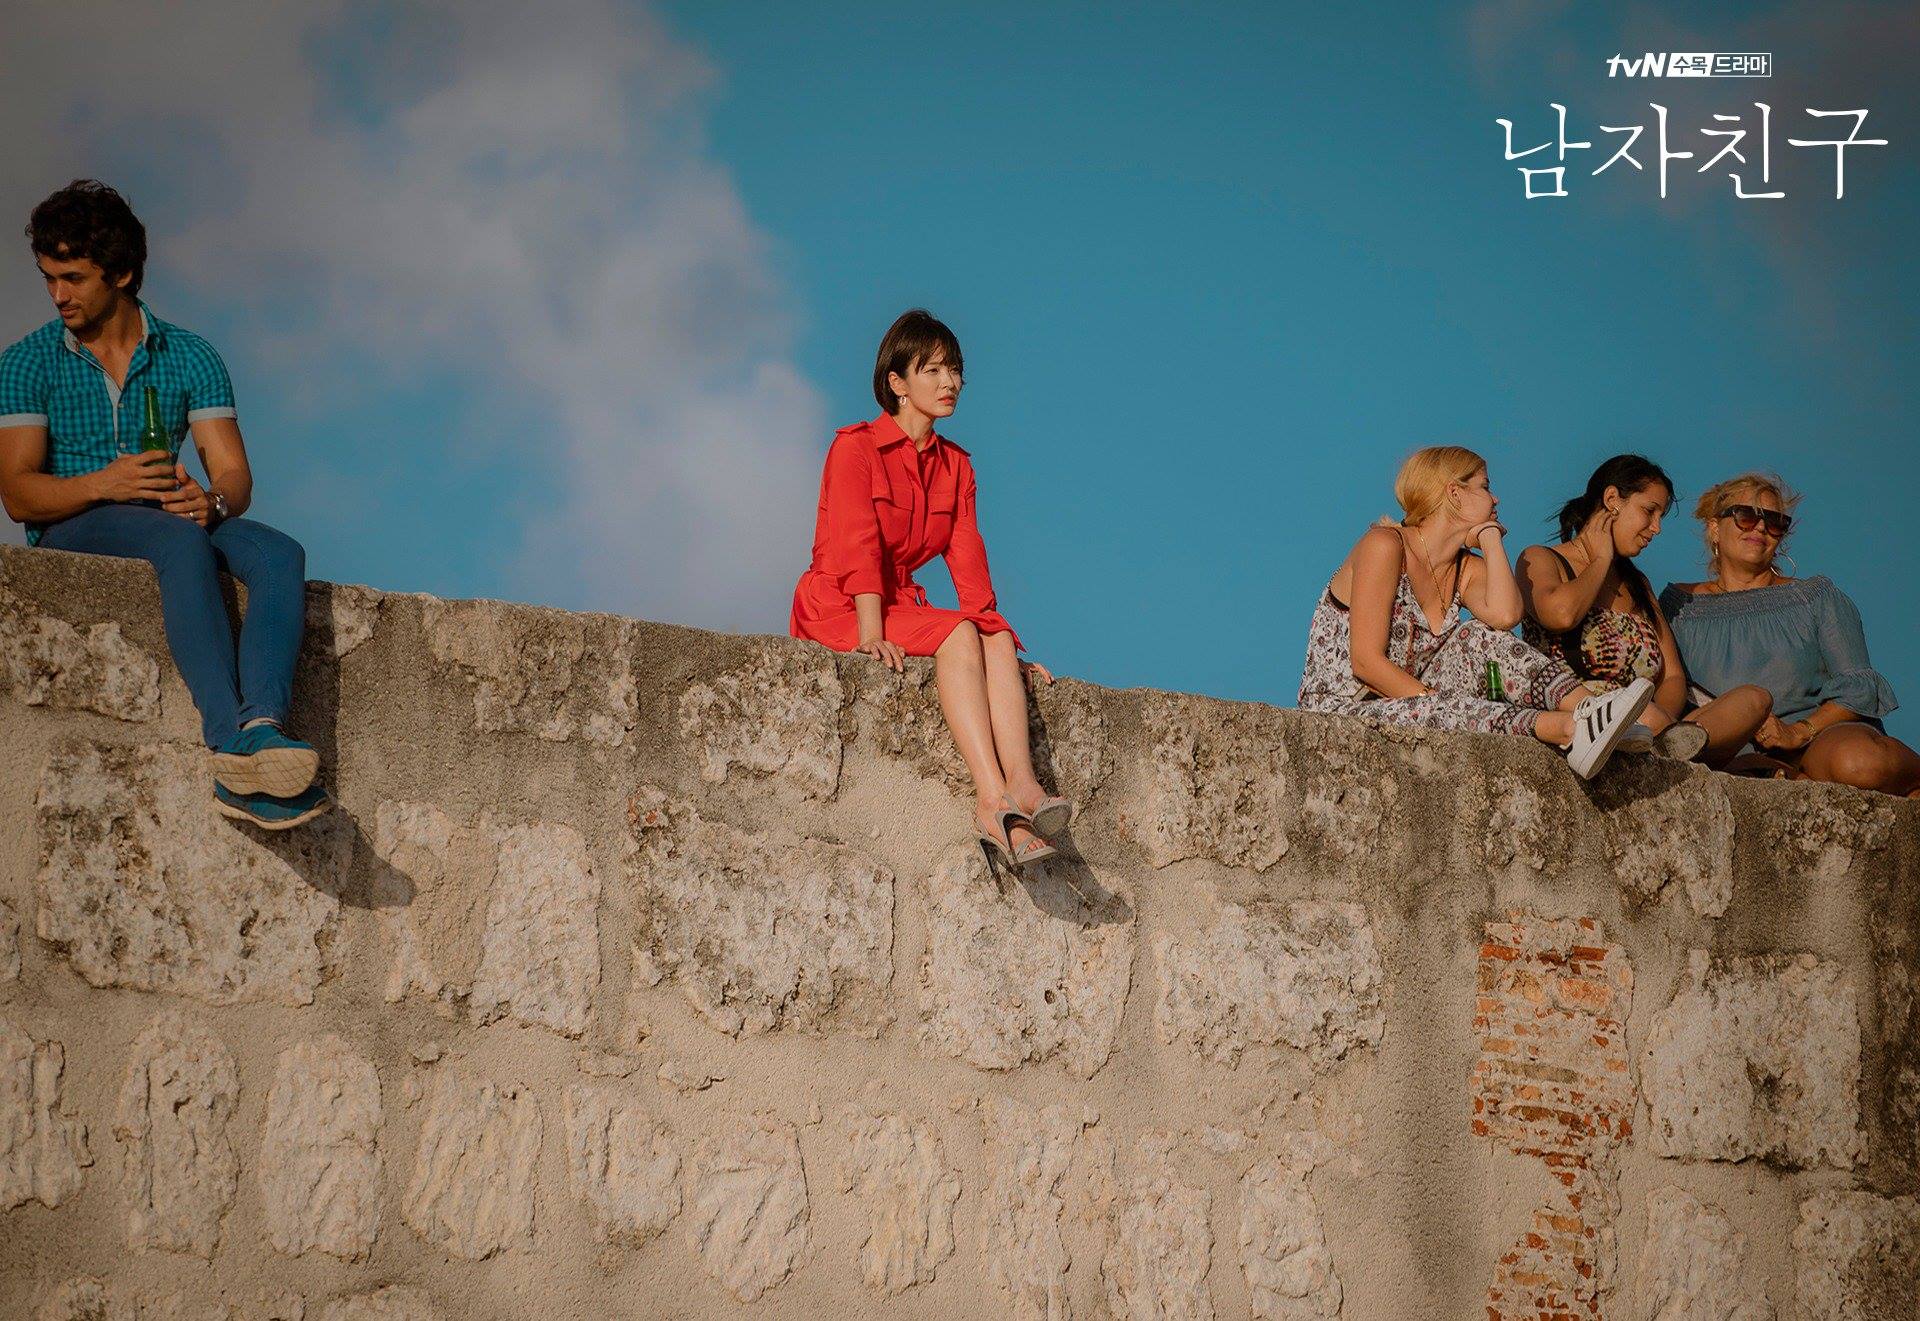 Nếu chưa xem Encounter của Song Hye Kyo, bạn sẽ 'tiếc hùi hụi' vì bỏ lỡ 3 điều cực thú vị này đấy! - Ảnh 3